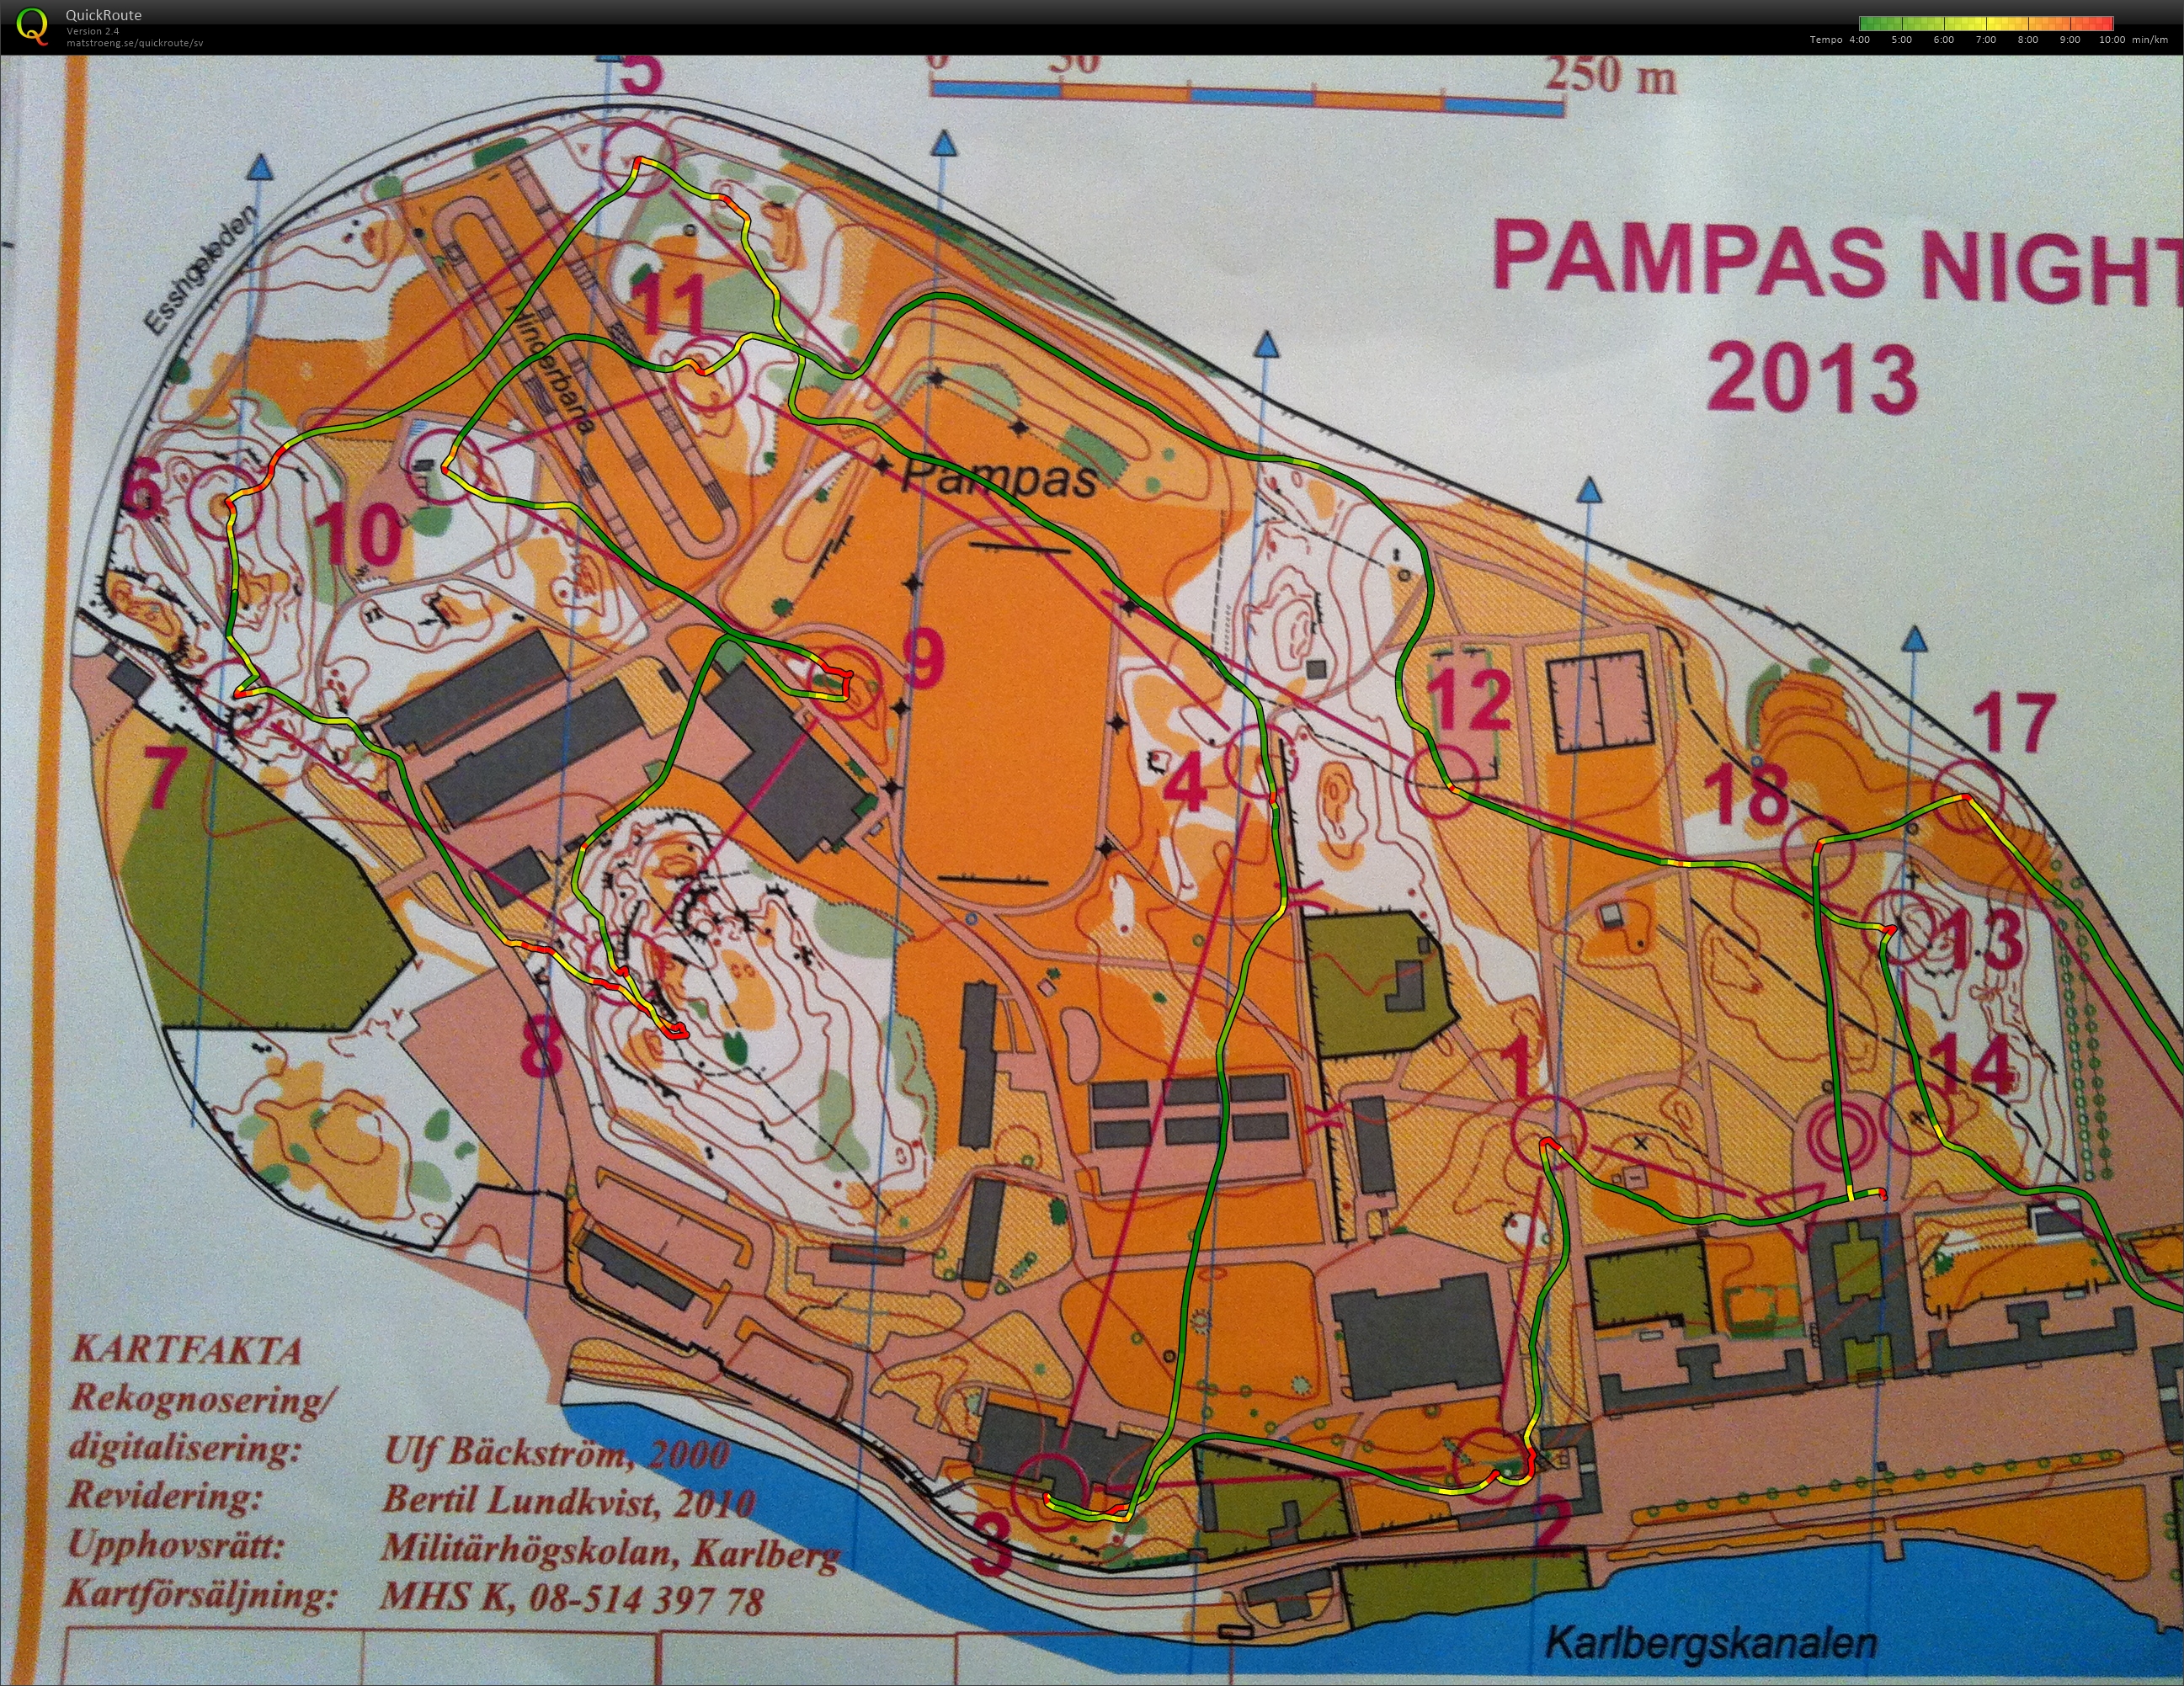 Pampas Night 2013 (2013-10-23) (26/01/2015)